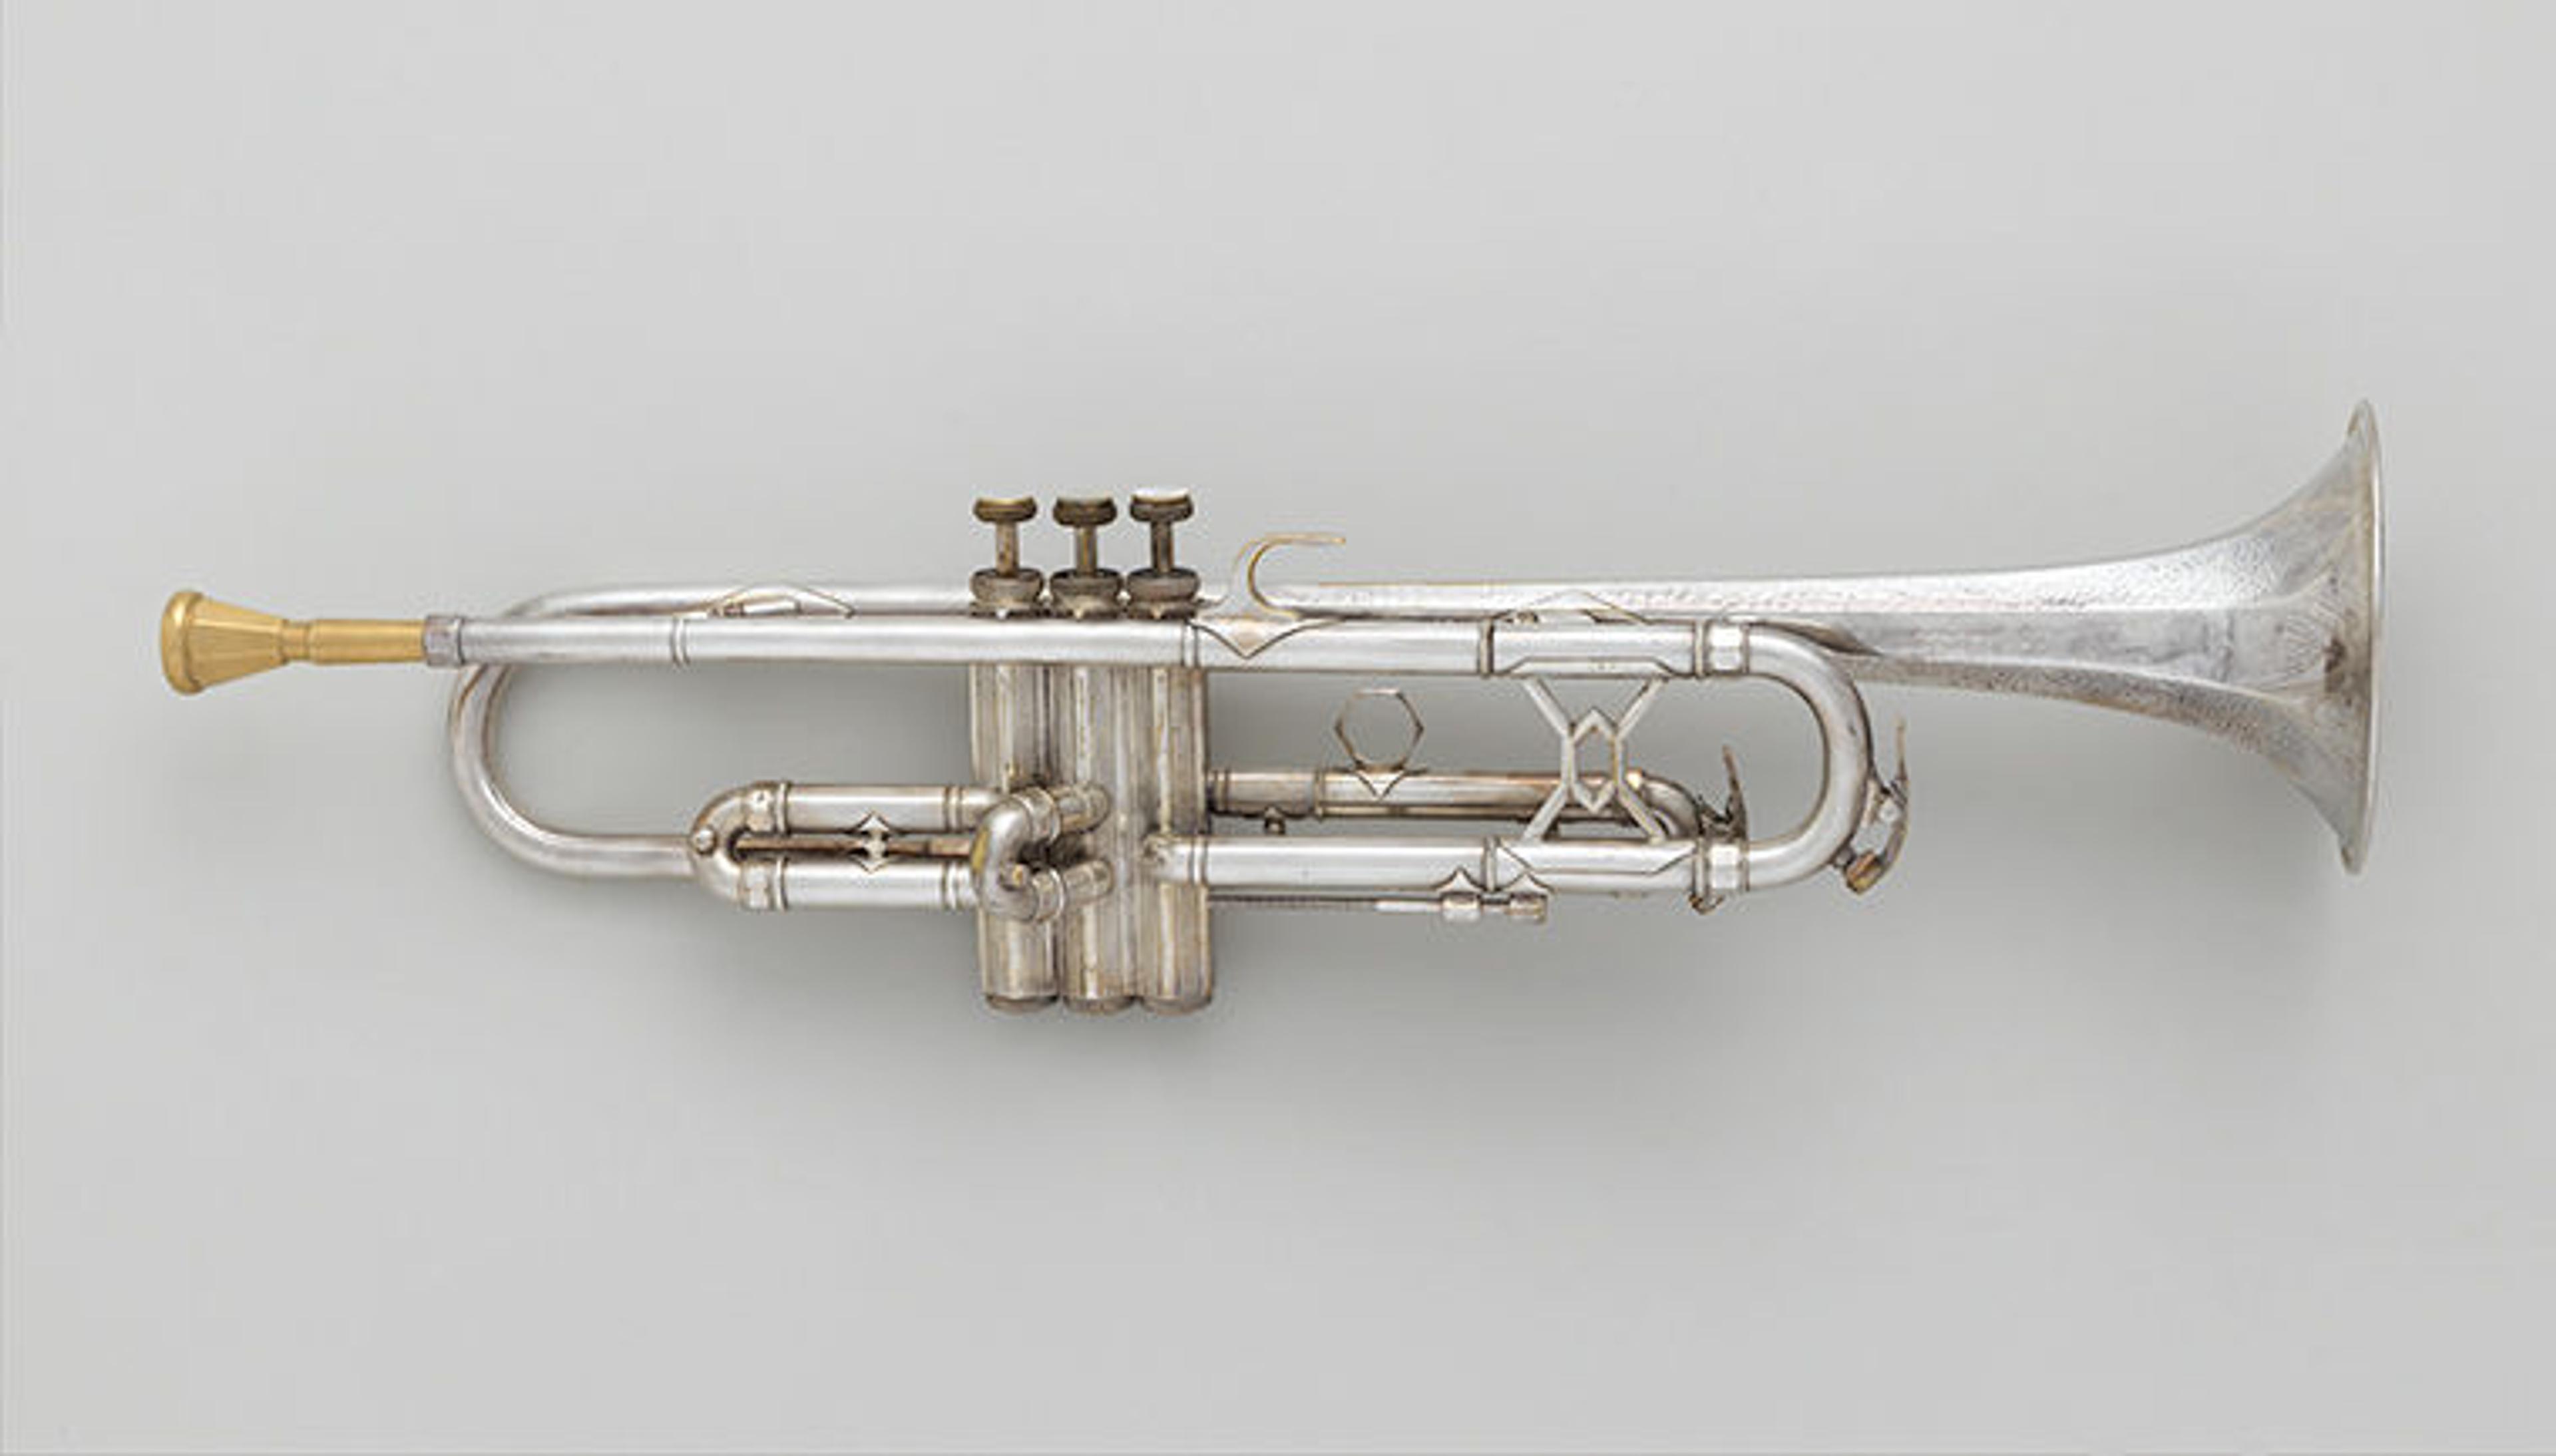 The "ARIGRA" trumpet.